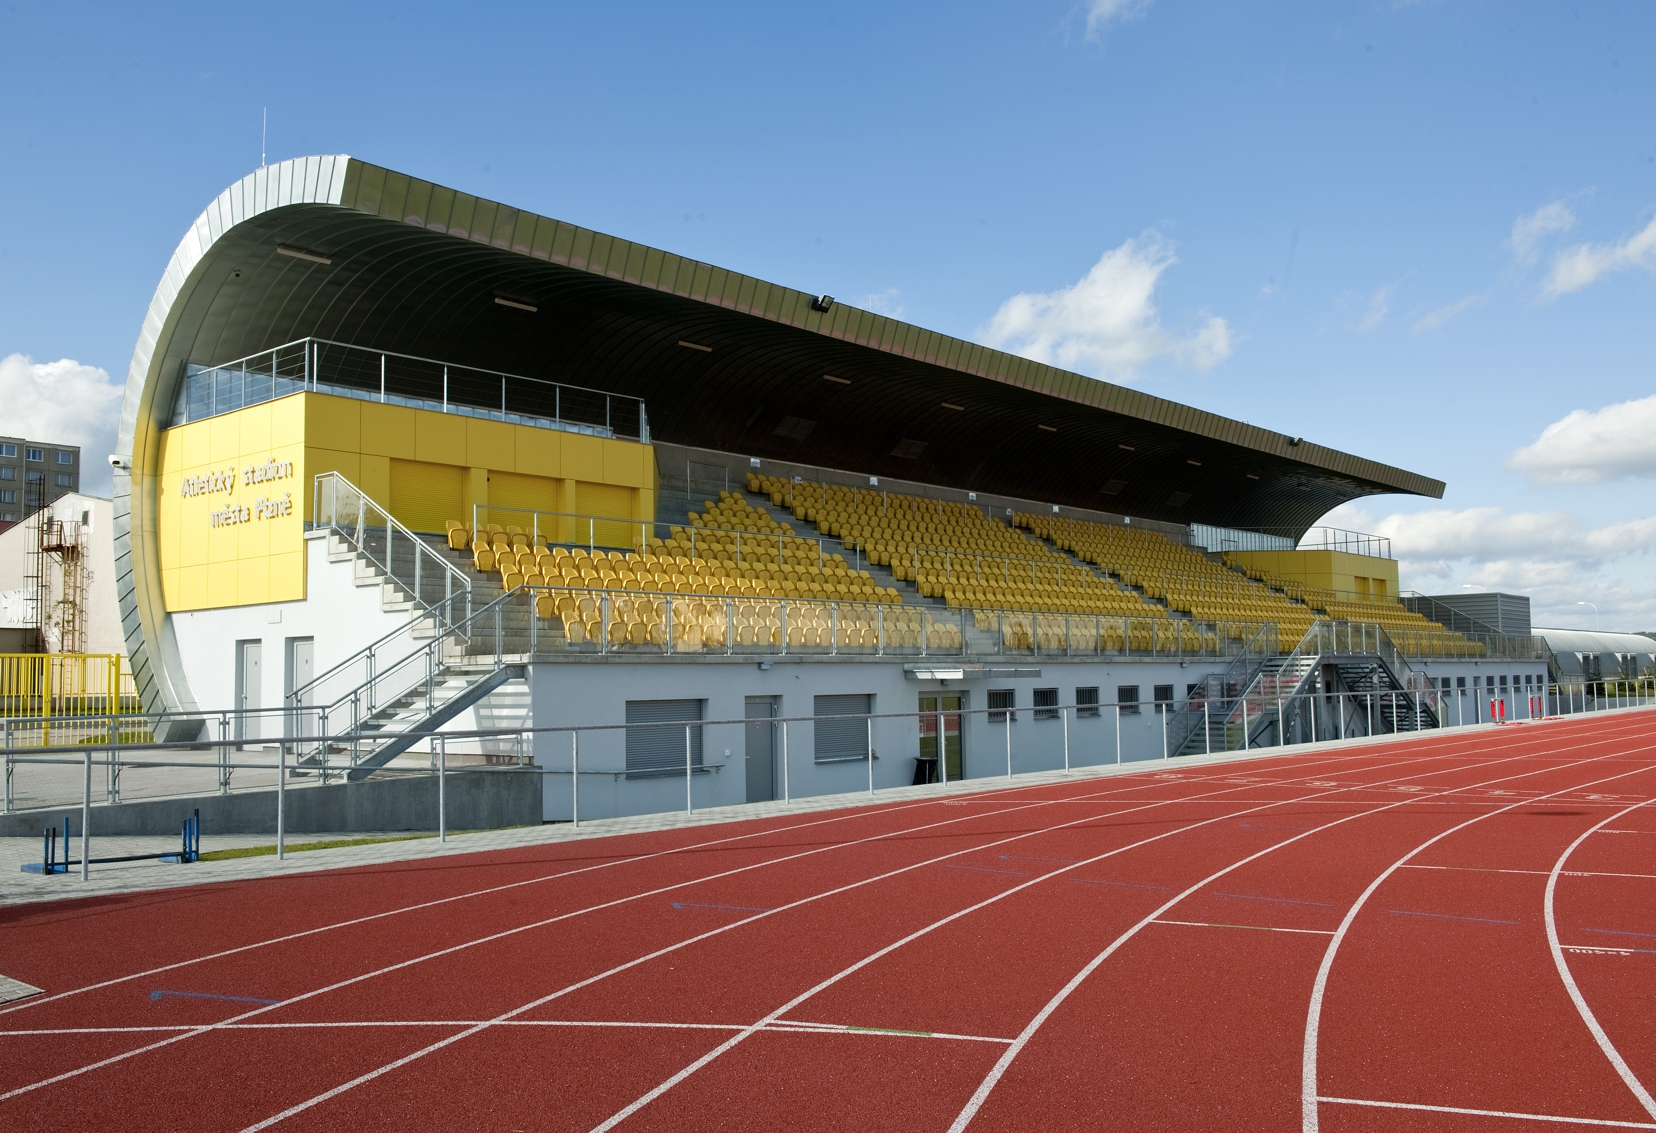 Atletický stadion Štruncovy sady - Building construction